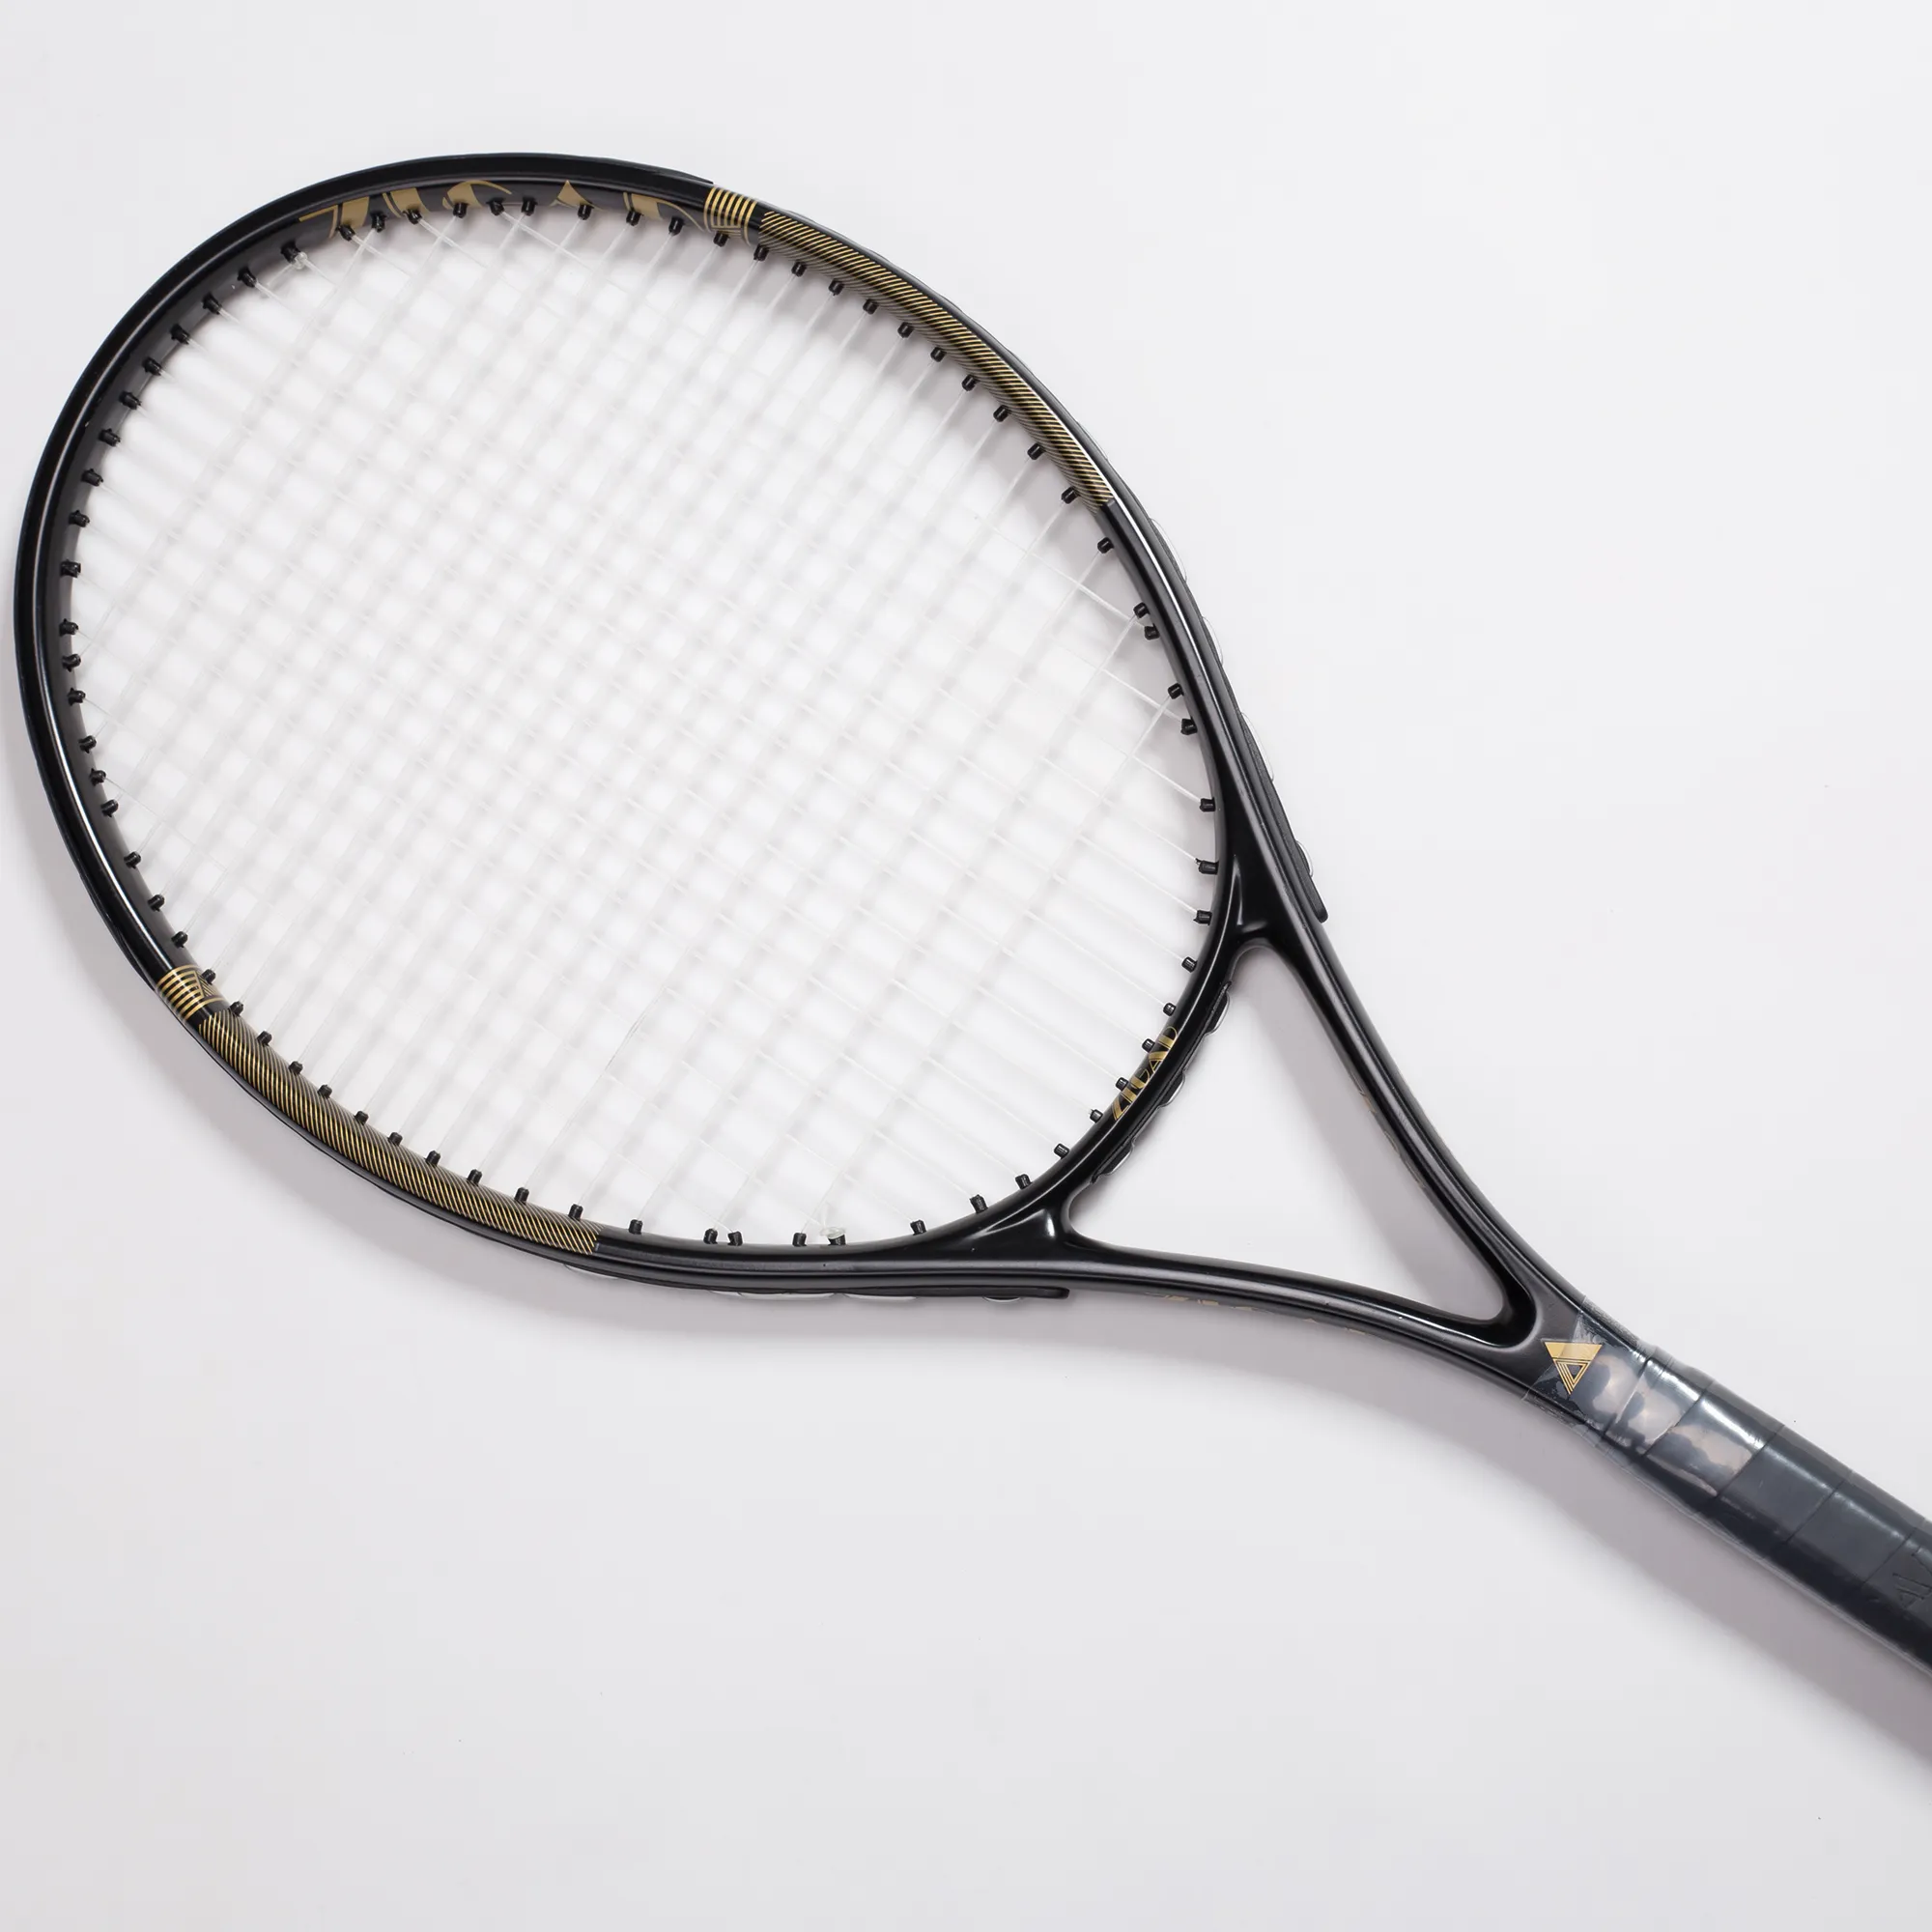 Kunden spezifische Markennamen 48-55LBS Tennis schläger aus Aluminium legierung 16x19 mit Stoßdämpfern